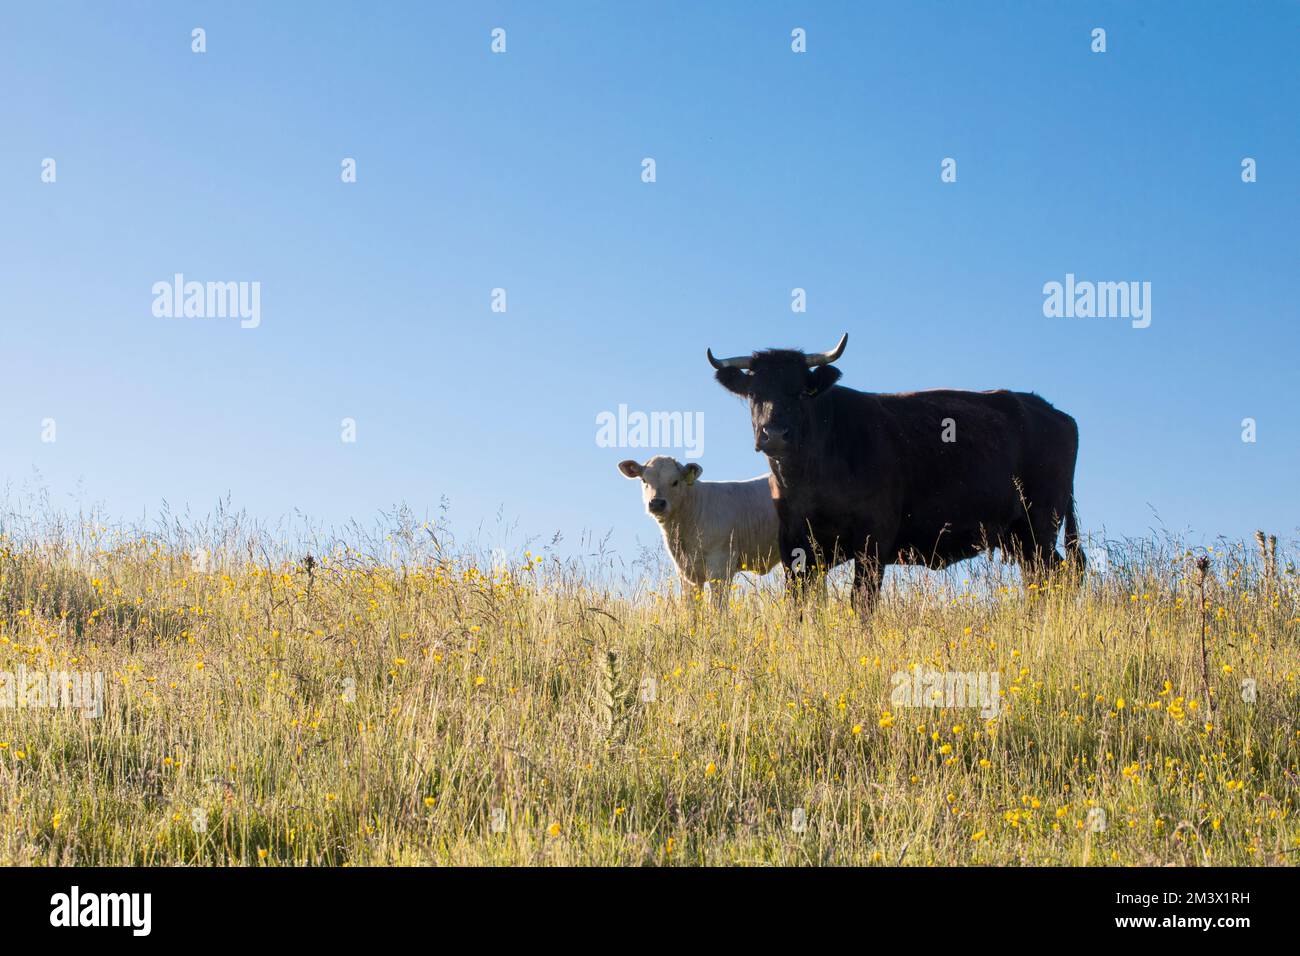 Vache allaitante noire galloise et veau de race croisée dans une ferme biologique. Powys, pays de Galles. Juin. Banque D'Images